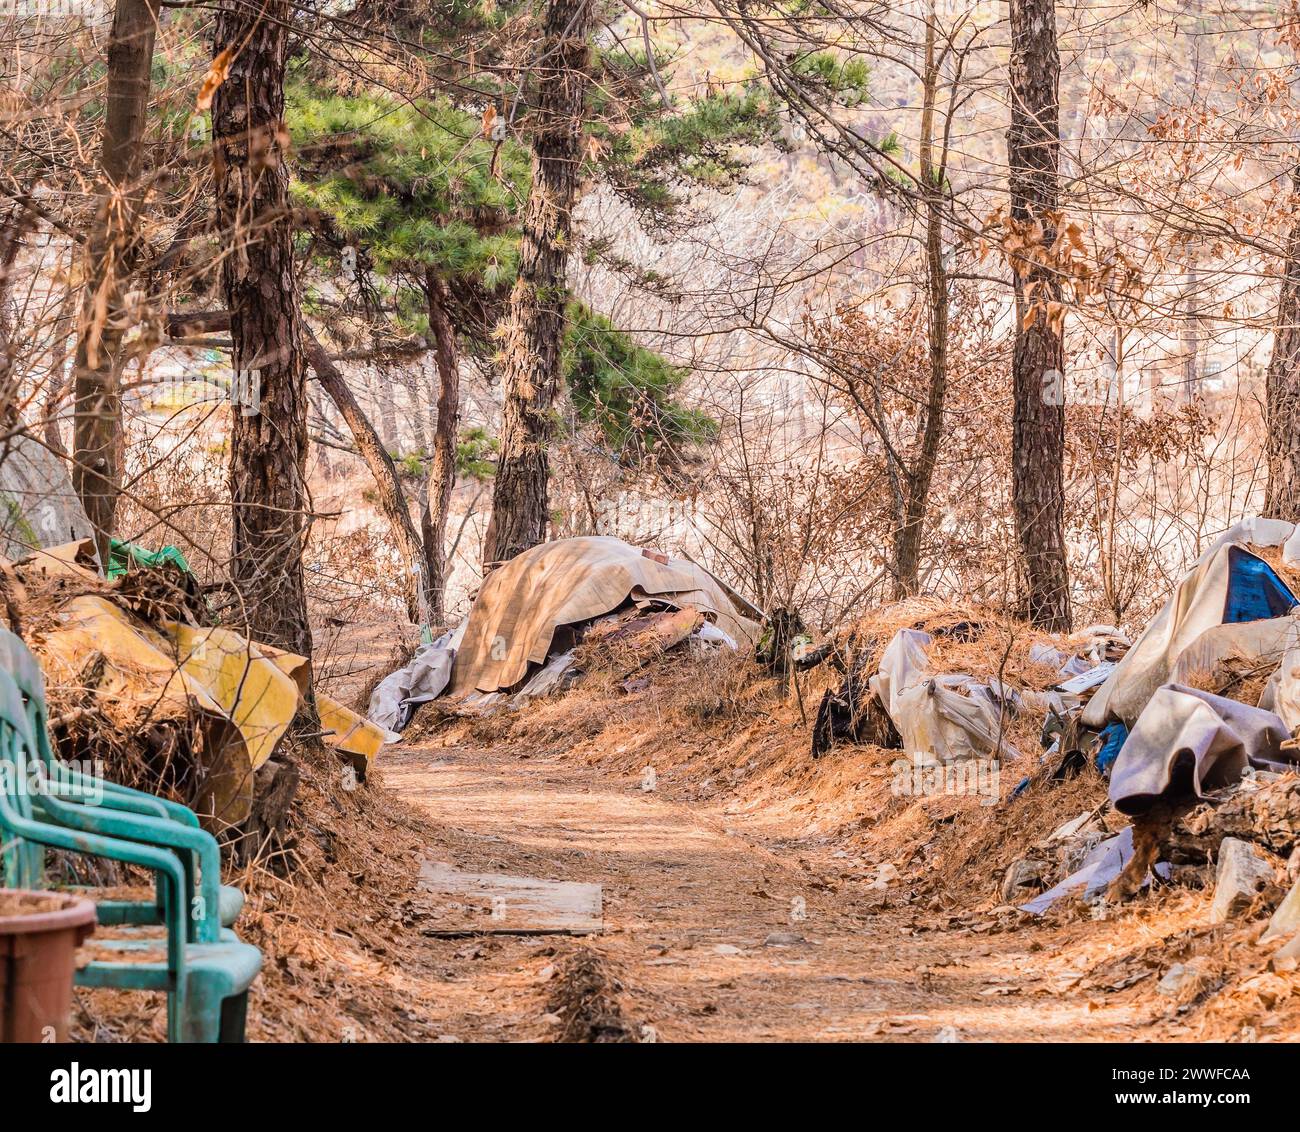 Sentier jonché et négligé à travers une forêt avec des bâches dispersées, en Corée du Sud Banque D'Images